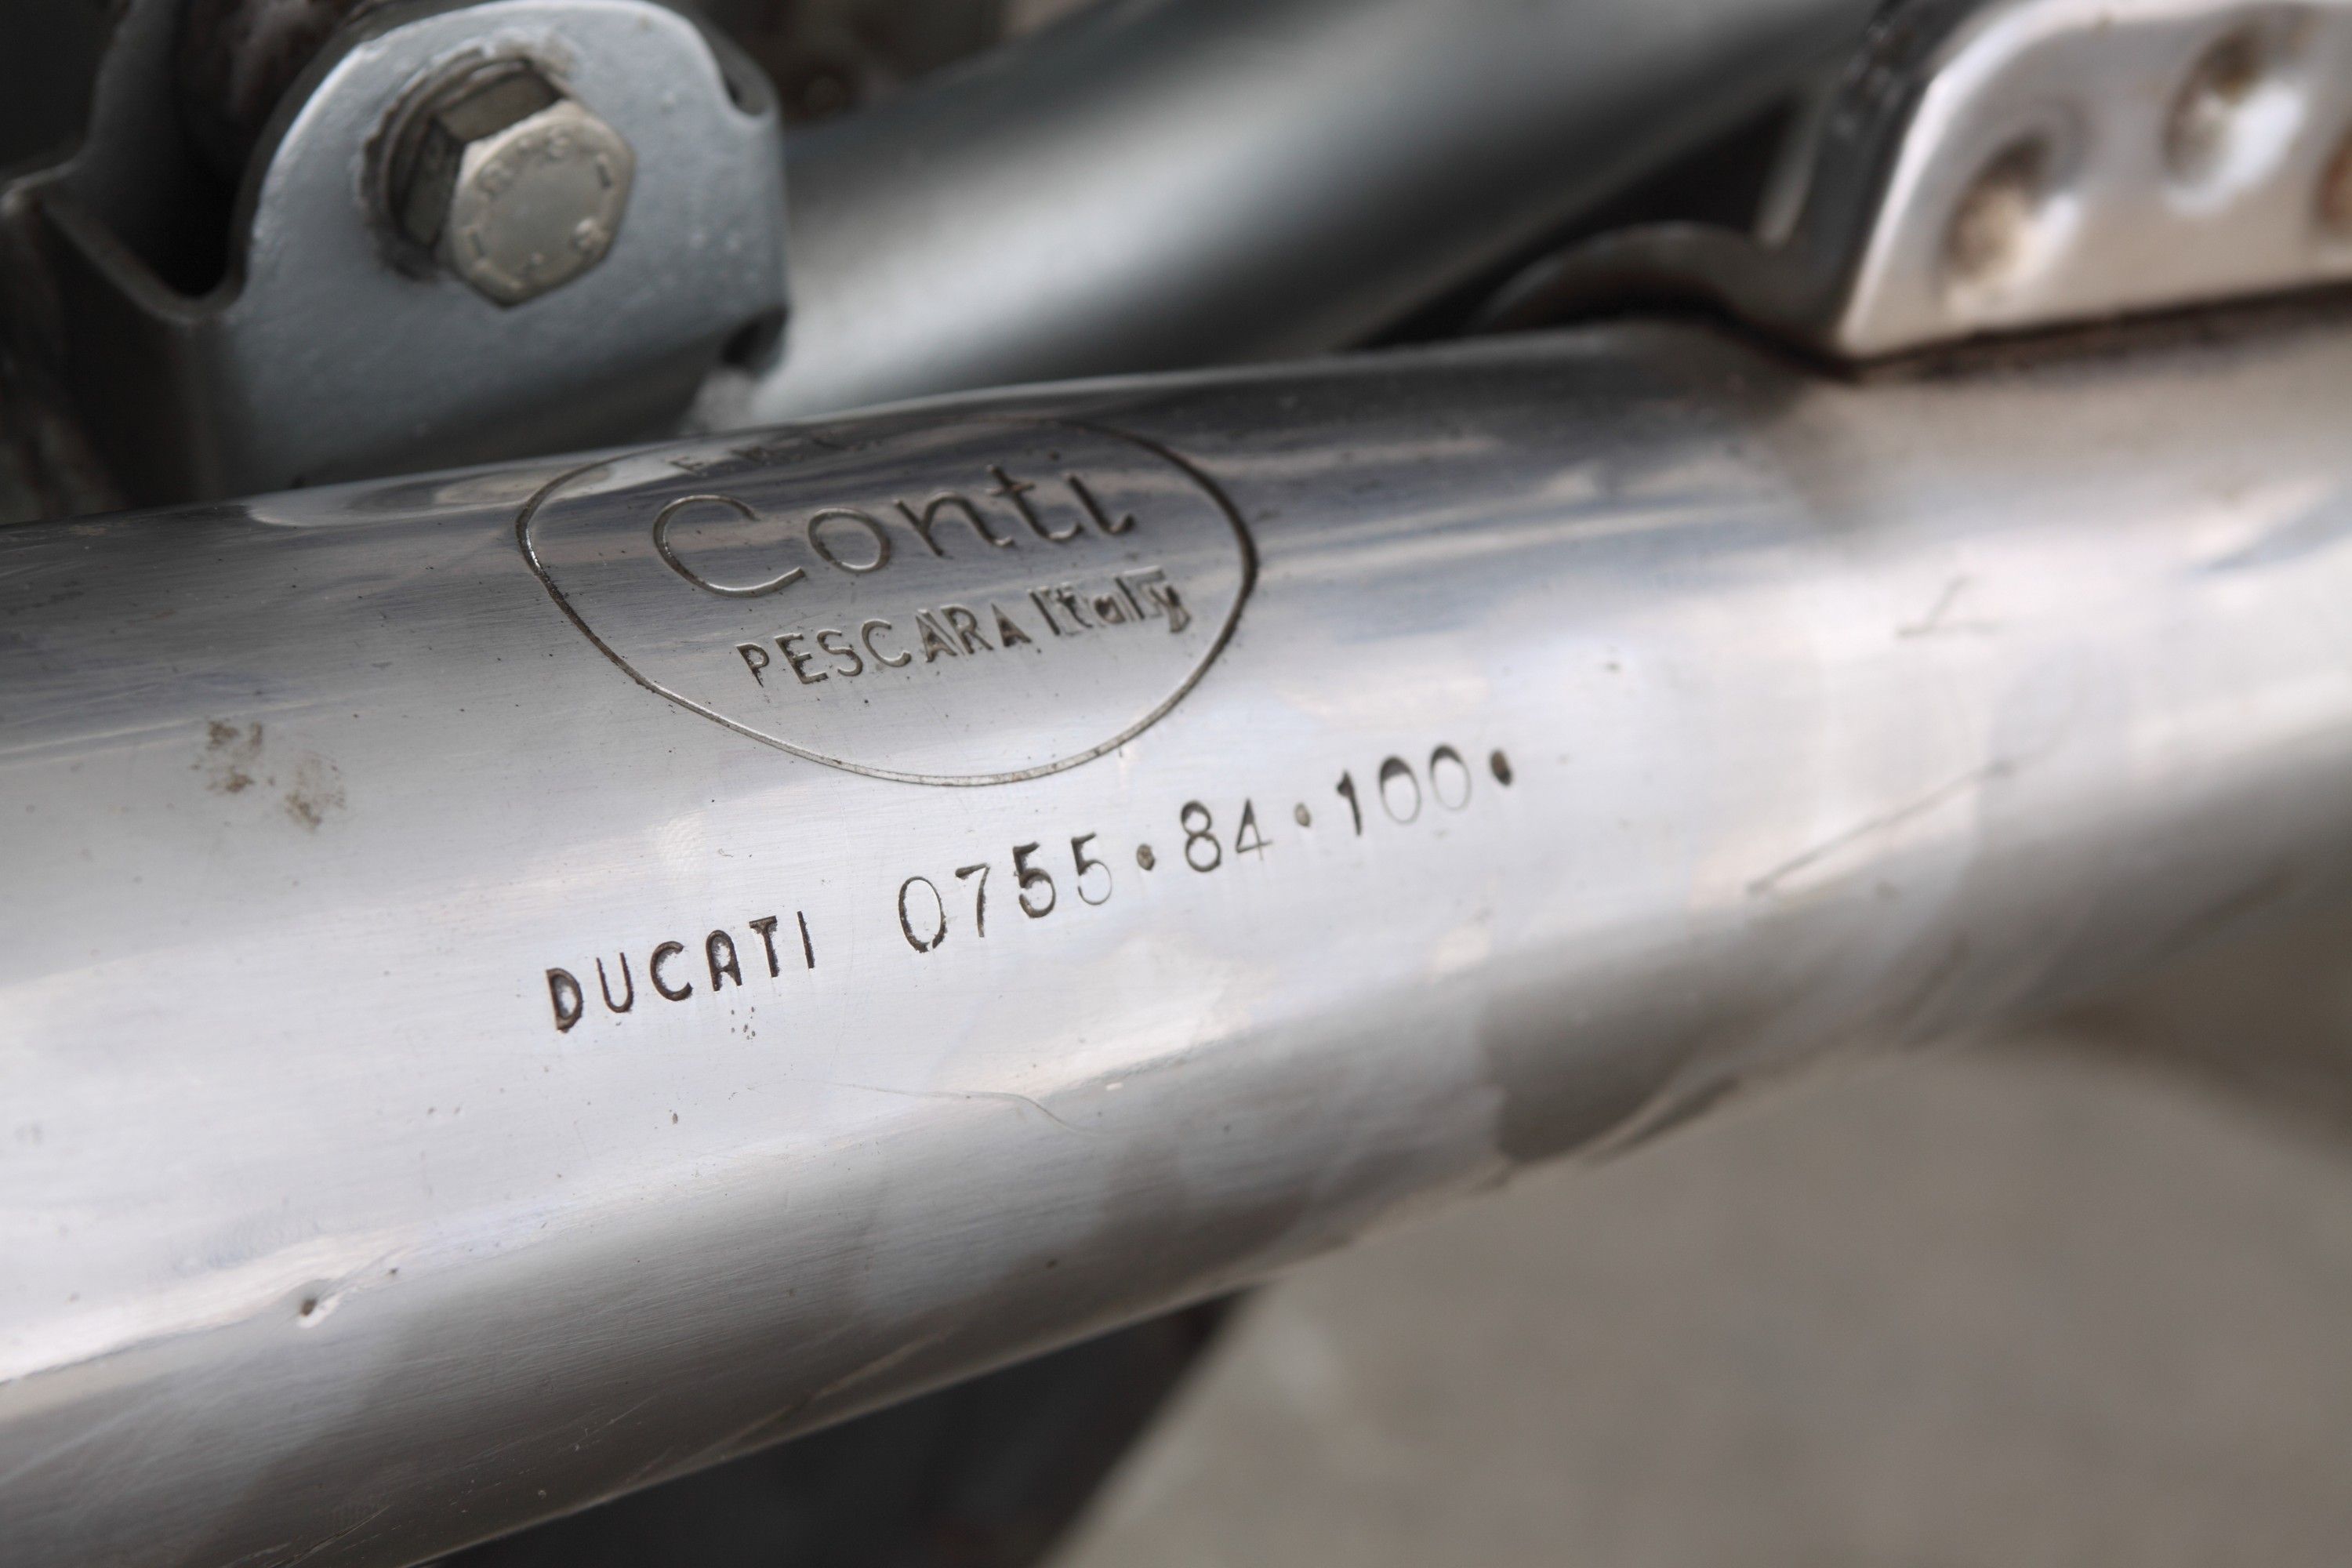 1975 Ducati 750 Super Sport